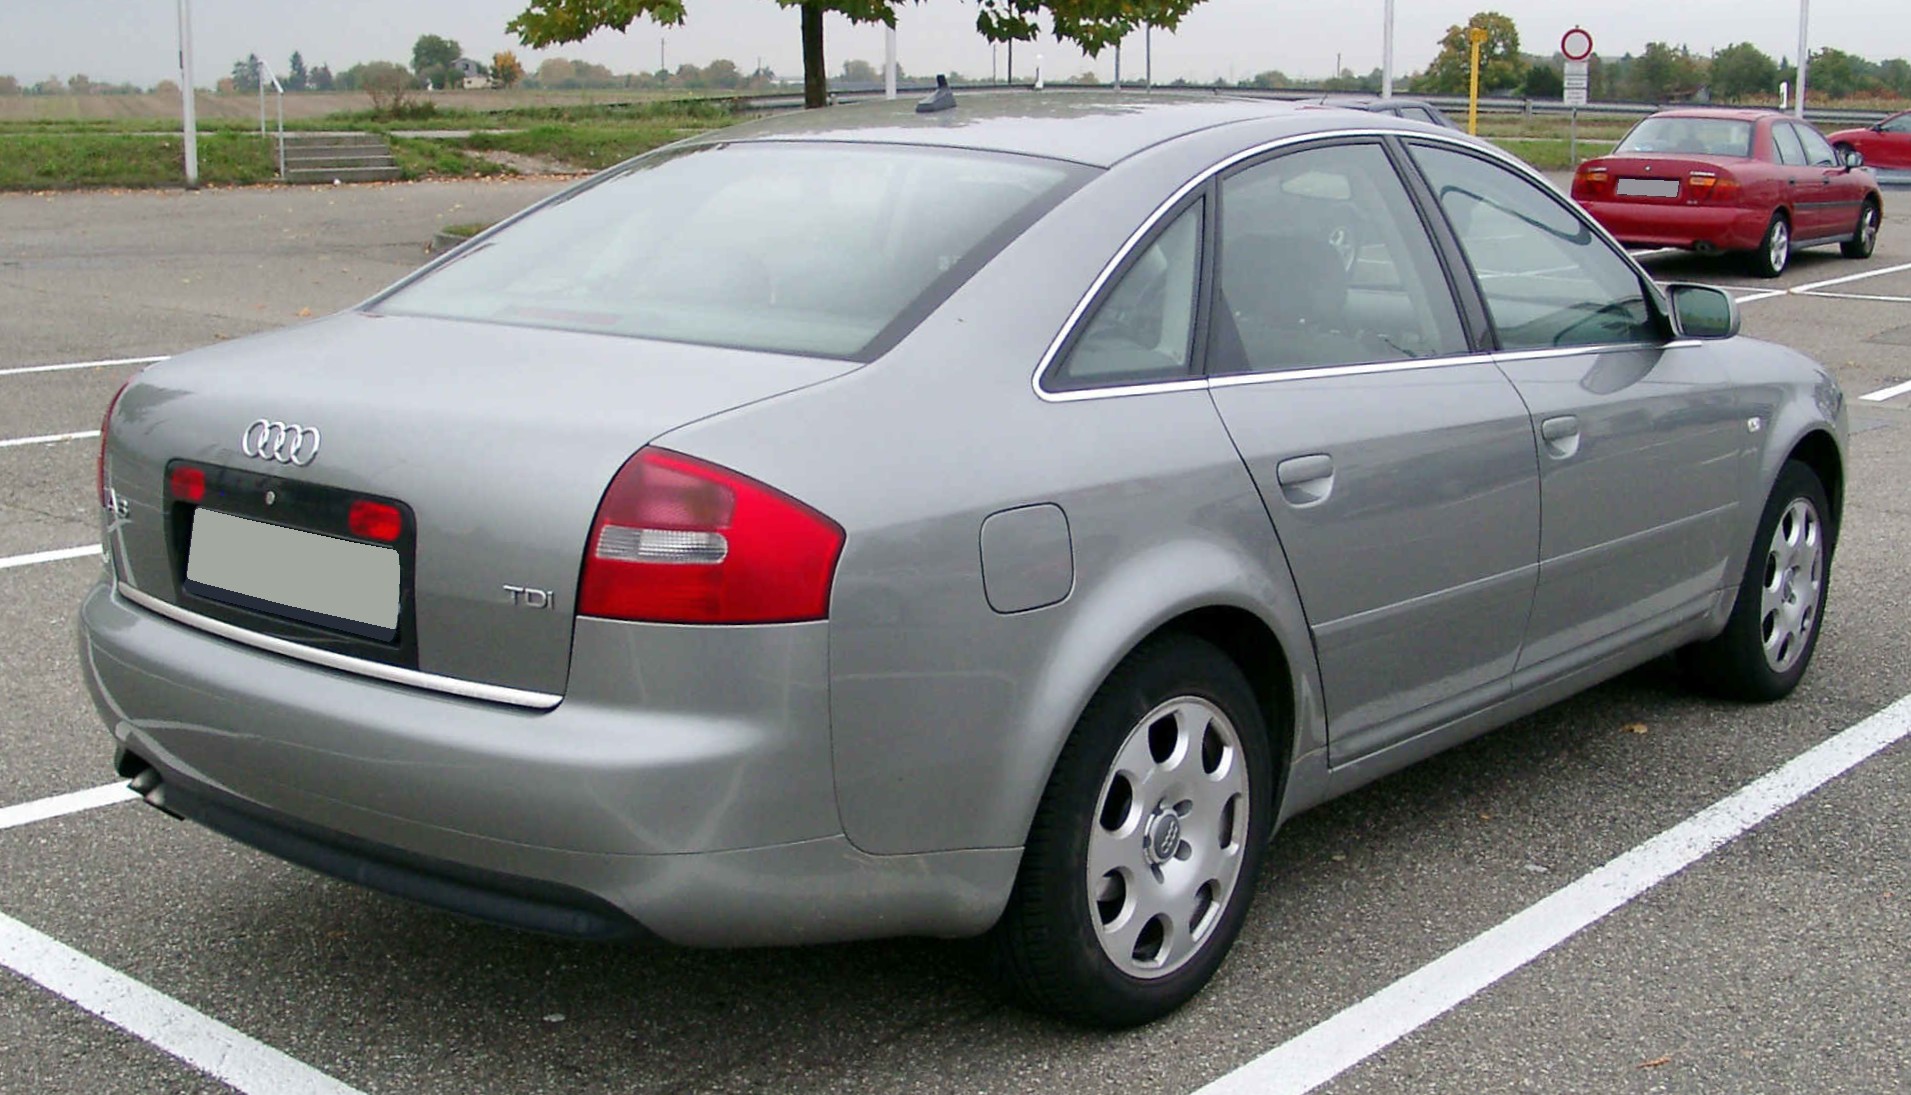 motor correcto recompensa File:Audi A6 C5 rear 20081009.jpg - Wikipedia